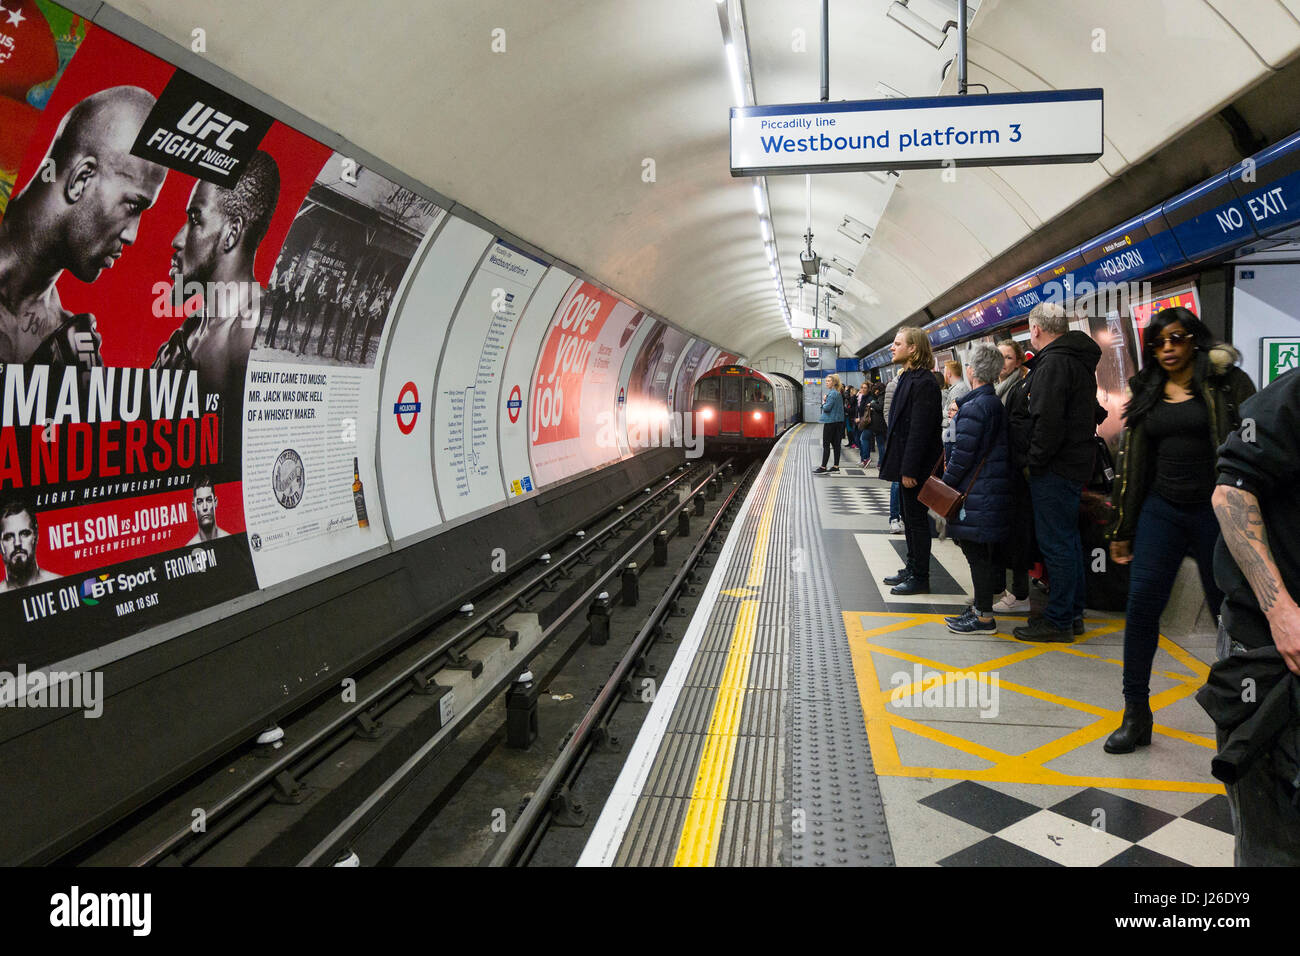 Les personnes en attente de la ligne Piccadilly du métro jusqu'à arriver à la plate-forme ouest 3 de la station de métro Holborn, Londres, Angleterre, Royaume-Uni, Europe Banque D'Images